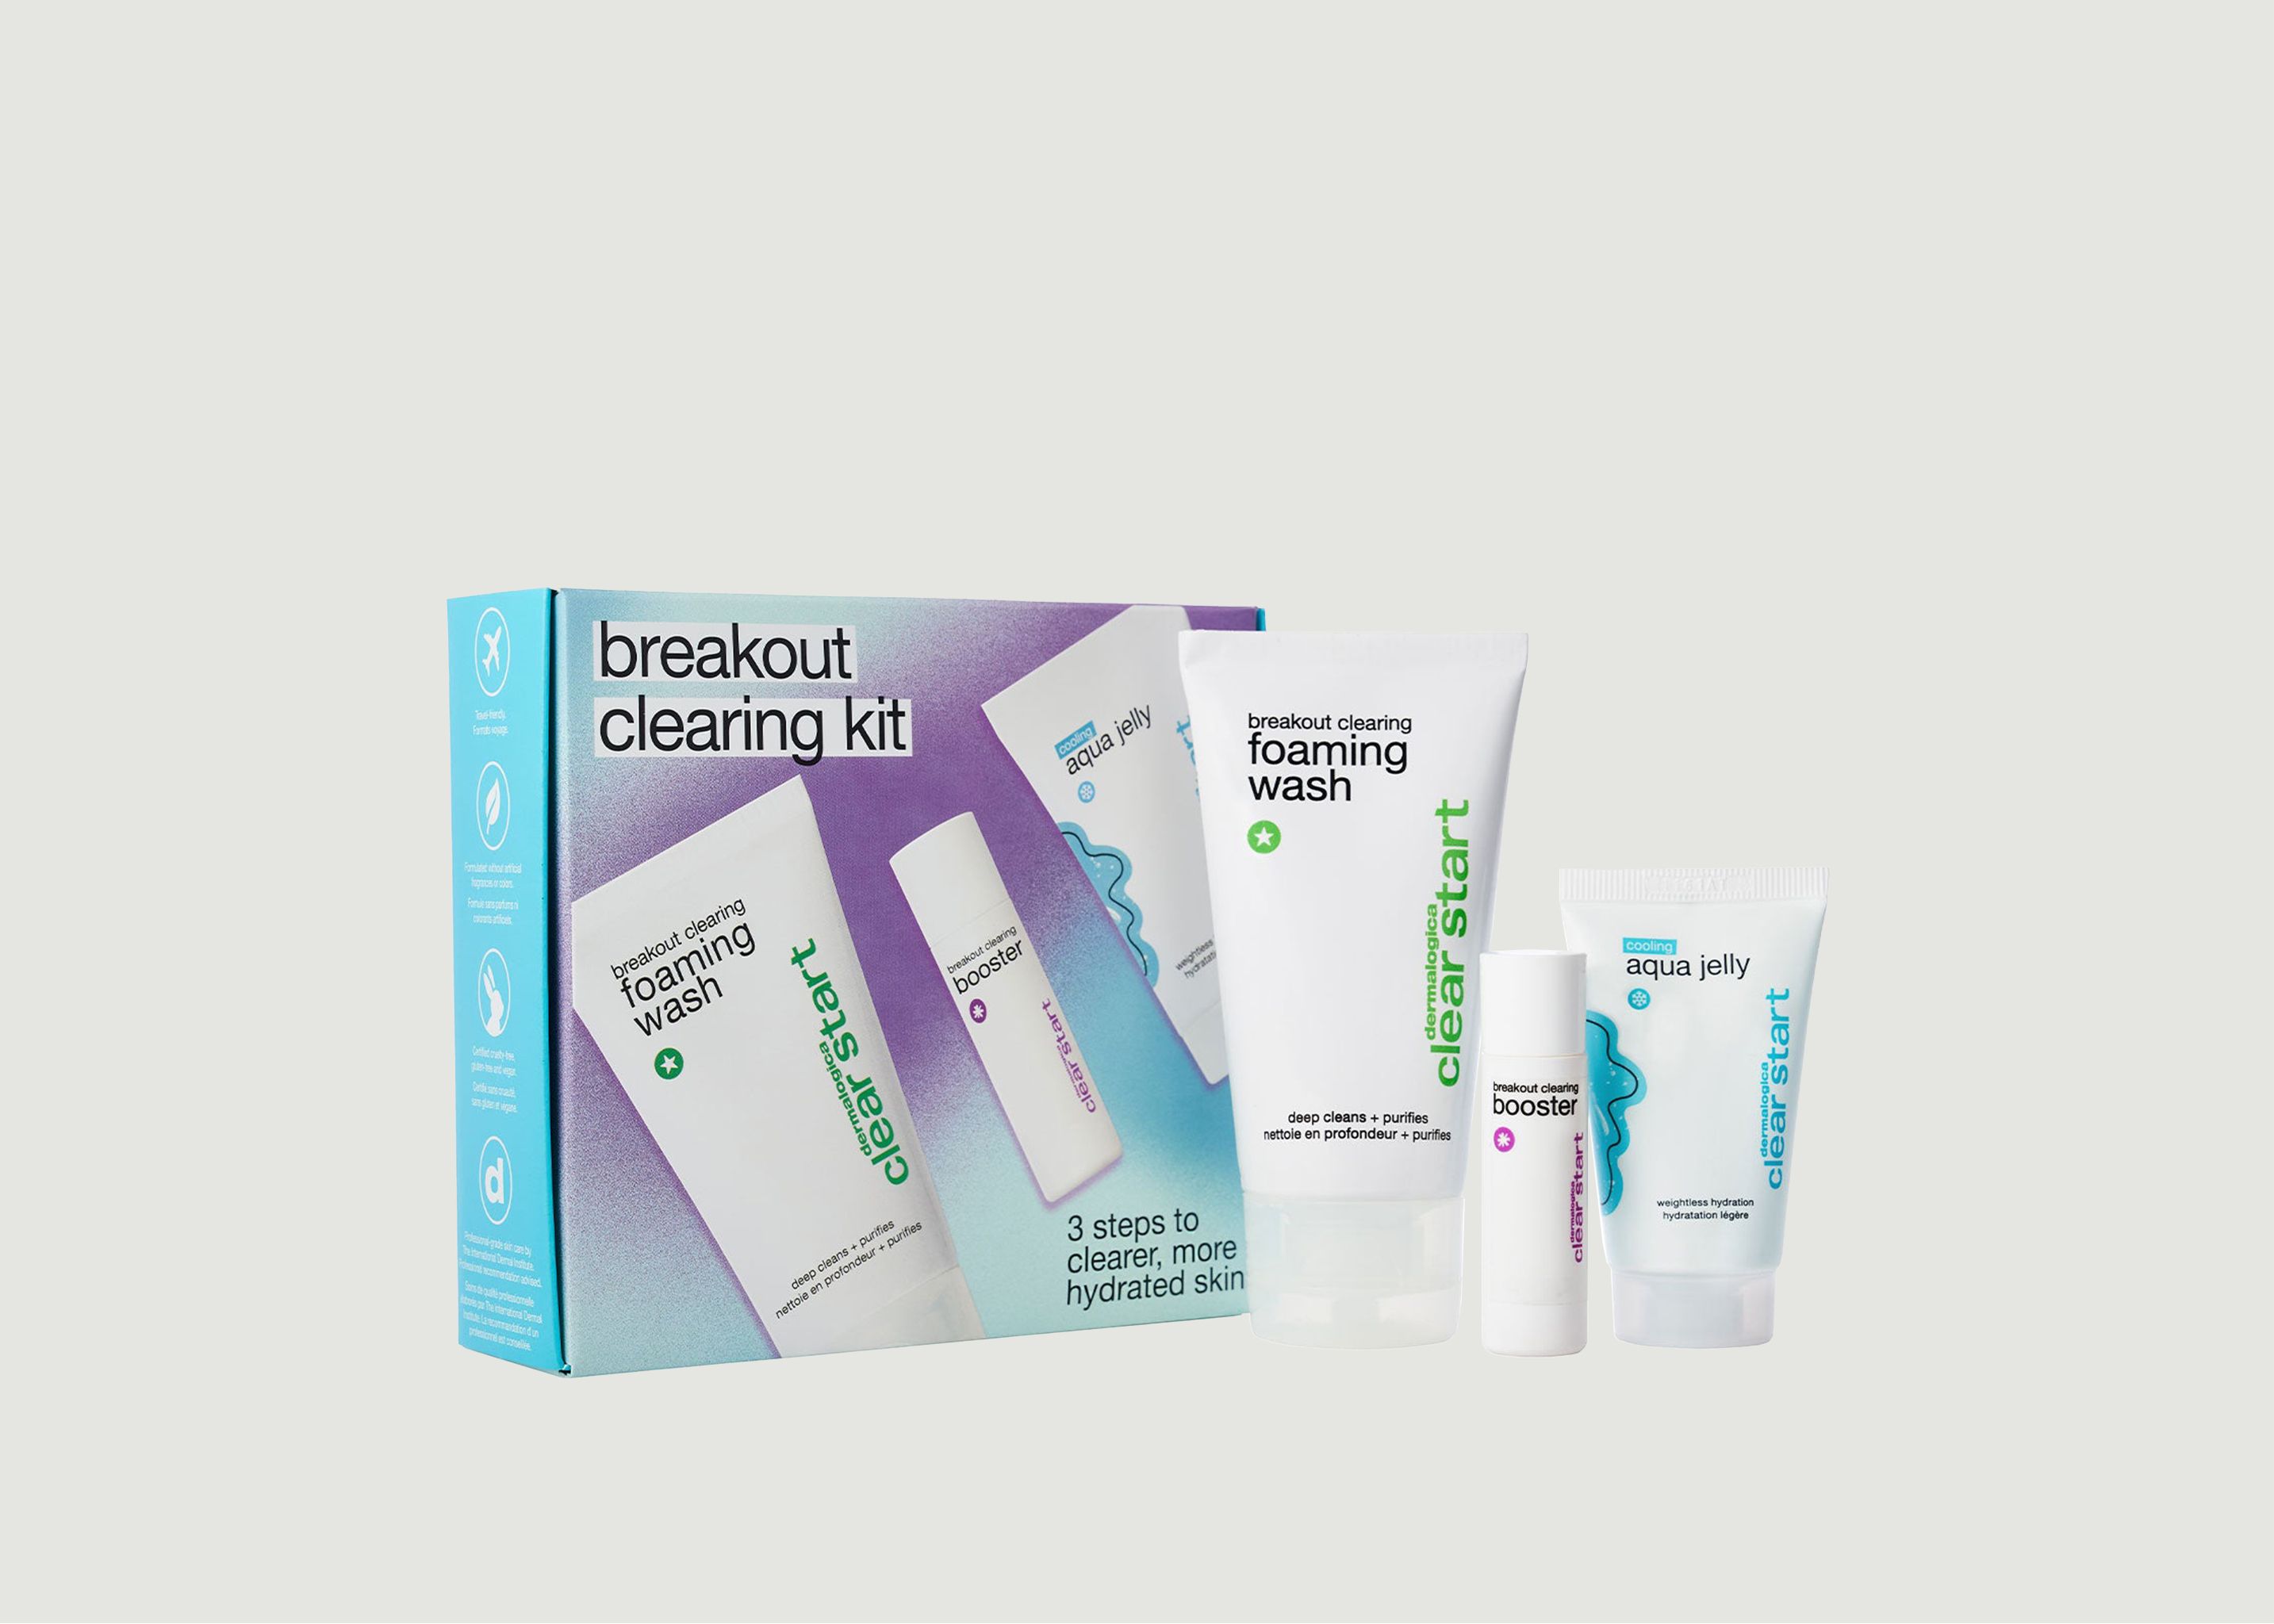 Anti-blemish cleansing kit - Dermalogica